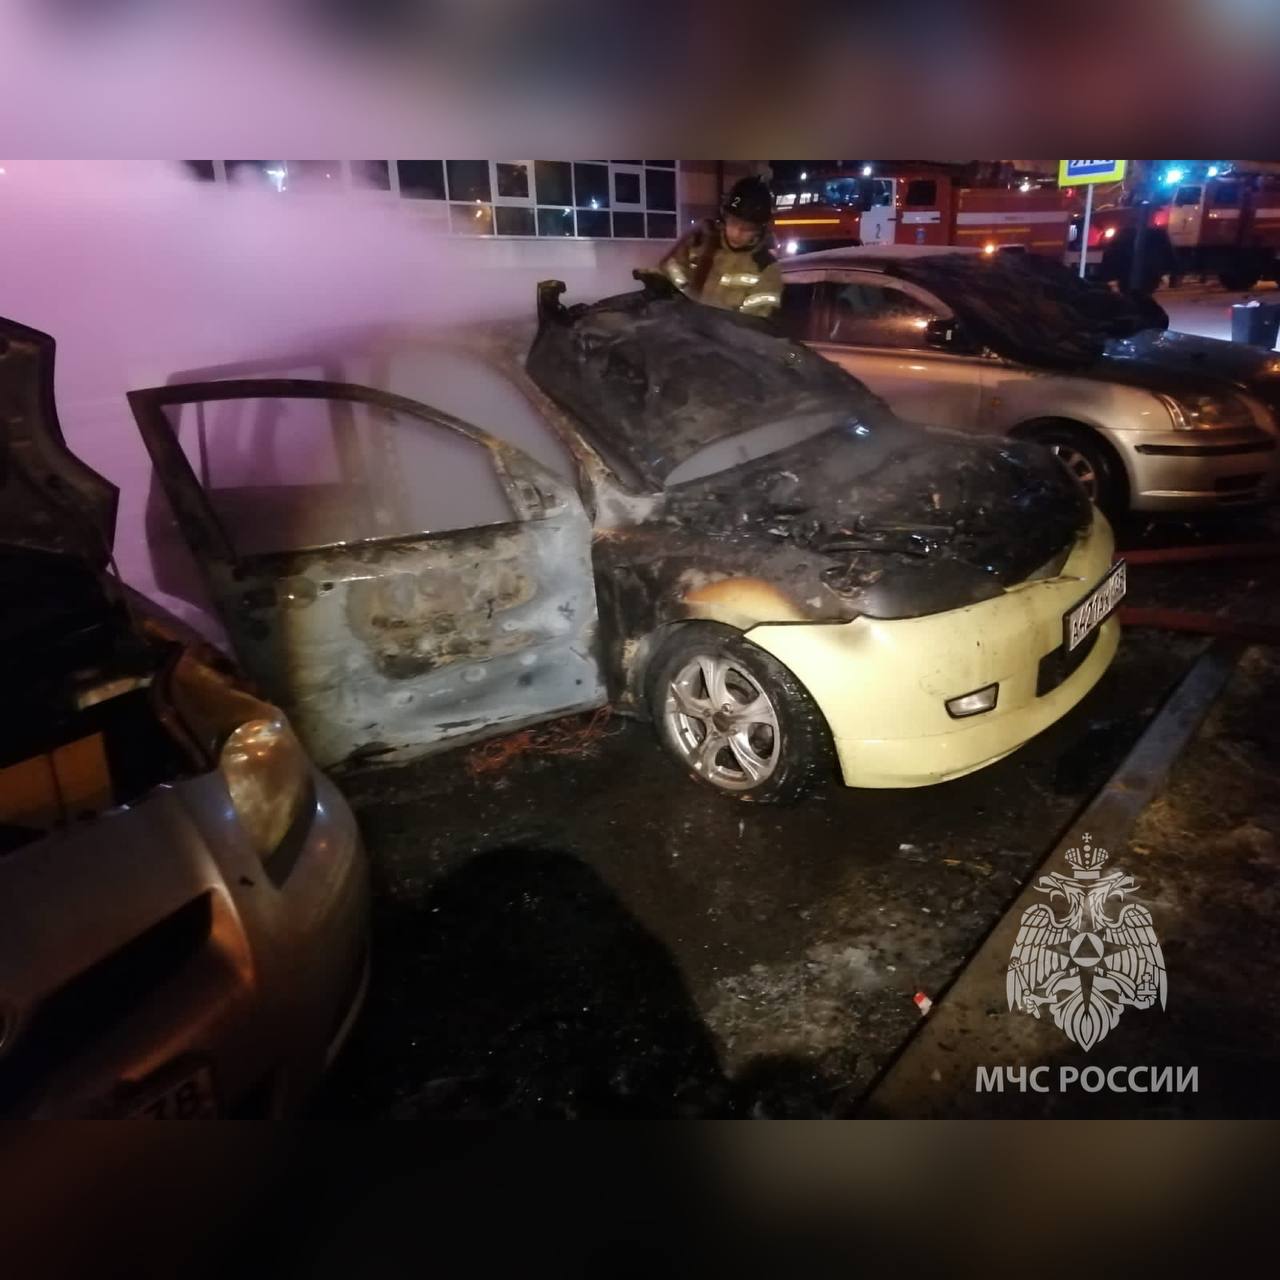 Огонь повредил три автомобиля на Бульваре Постышева в Иркутске